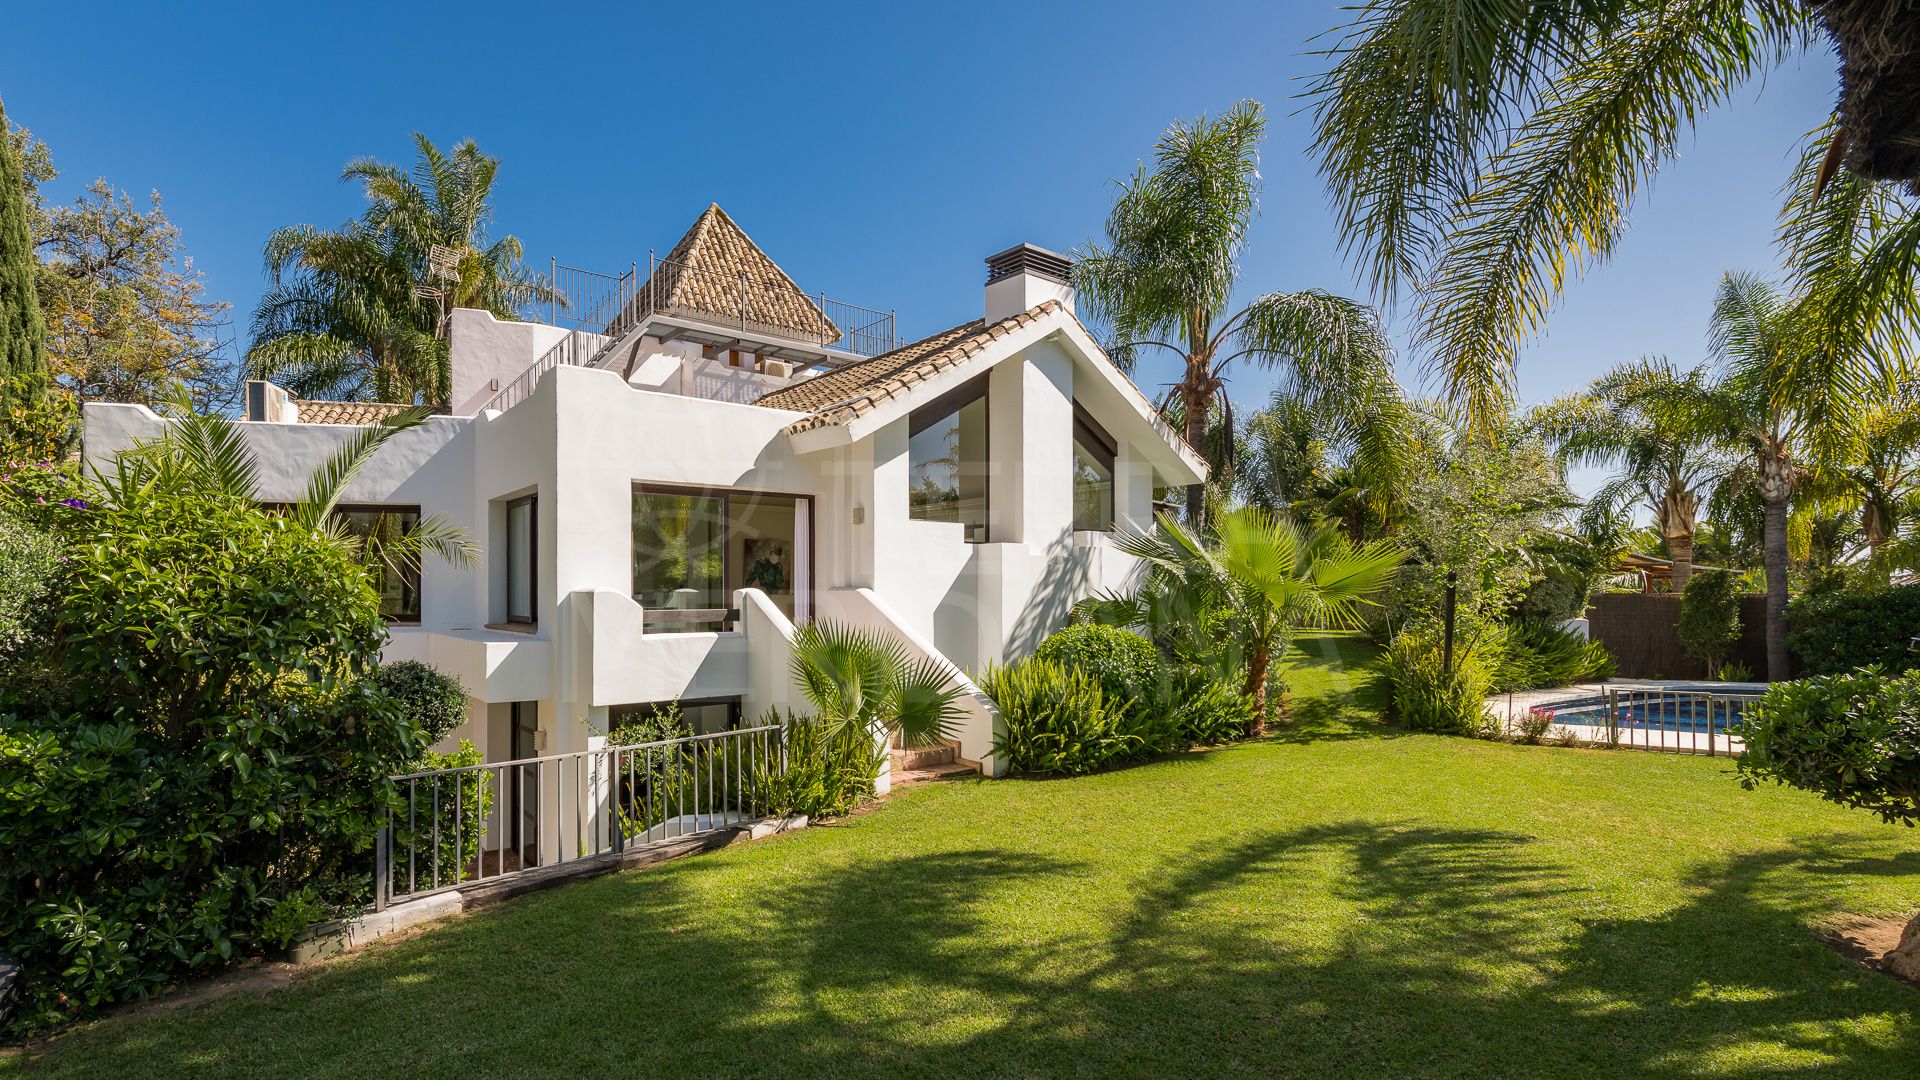 Fabulous 5 bedroom villa on large plot for sale in El Rosario, Marbella